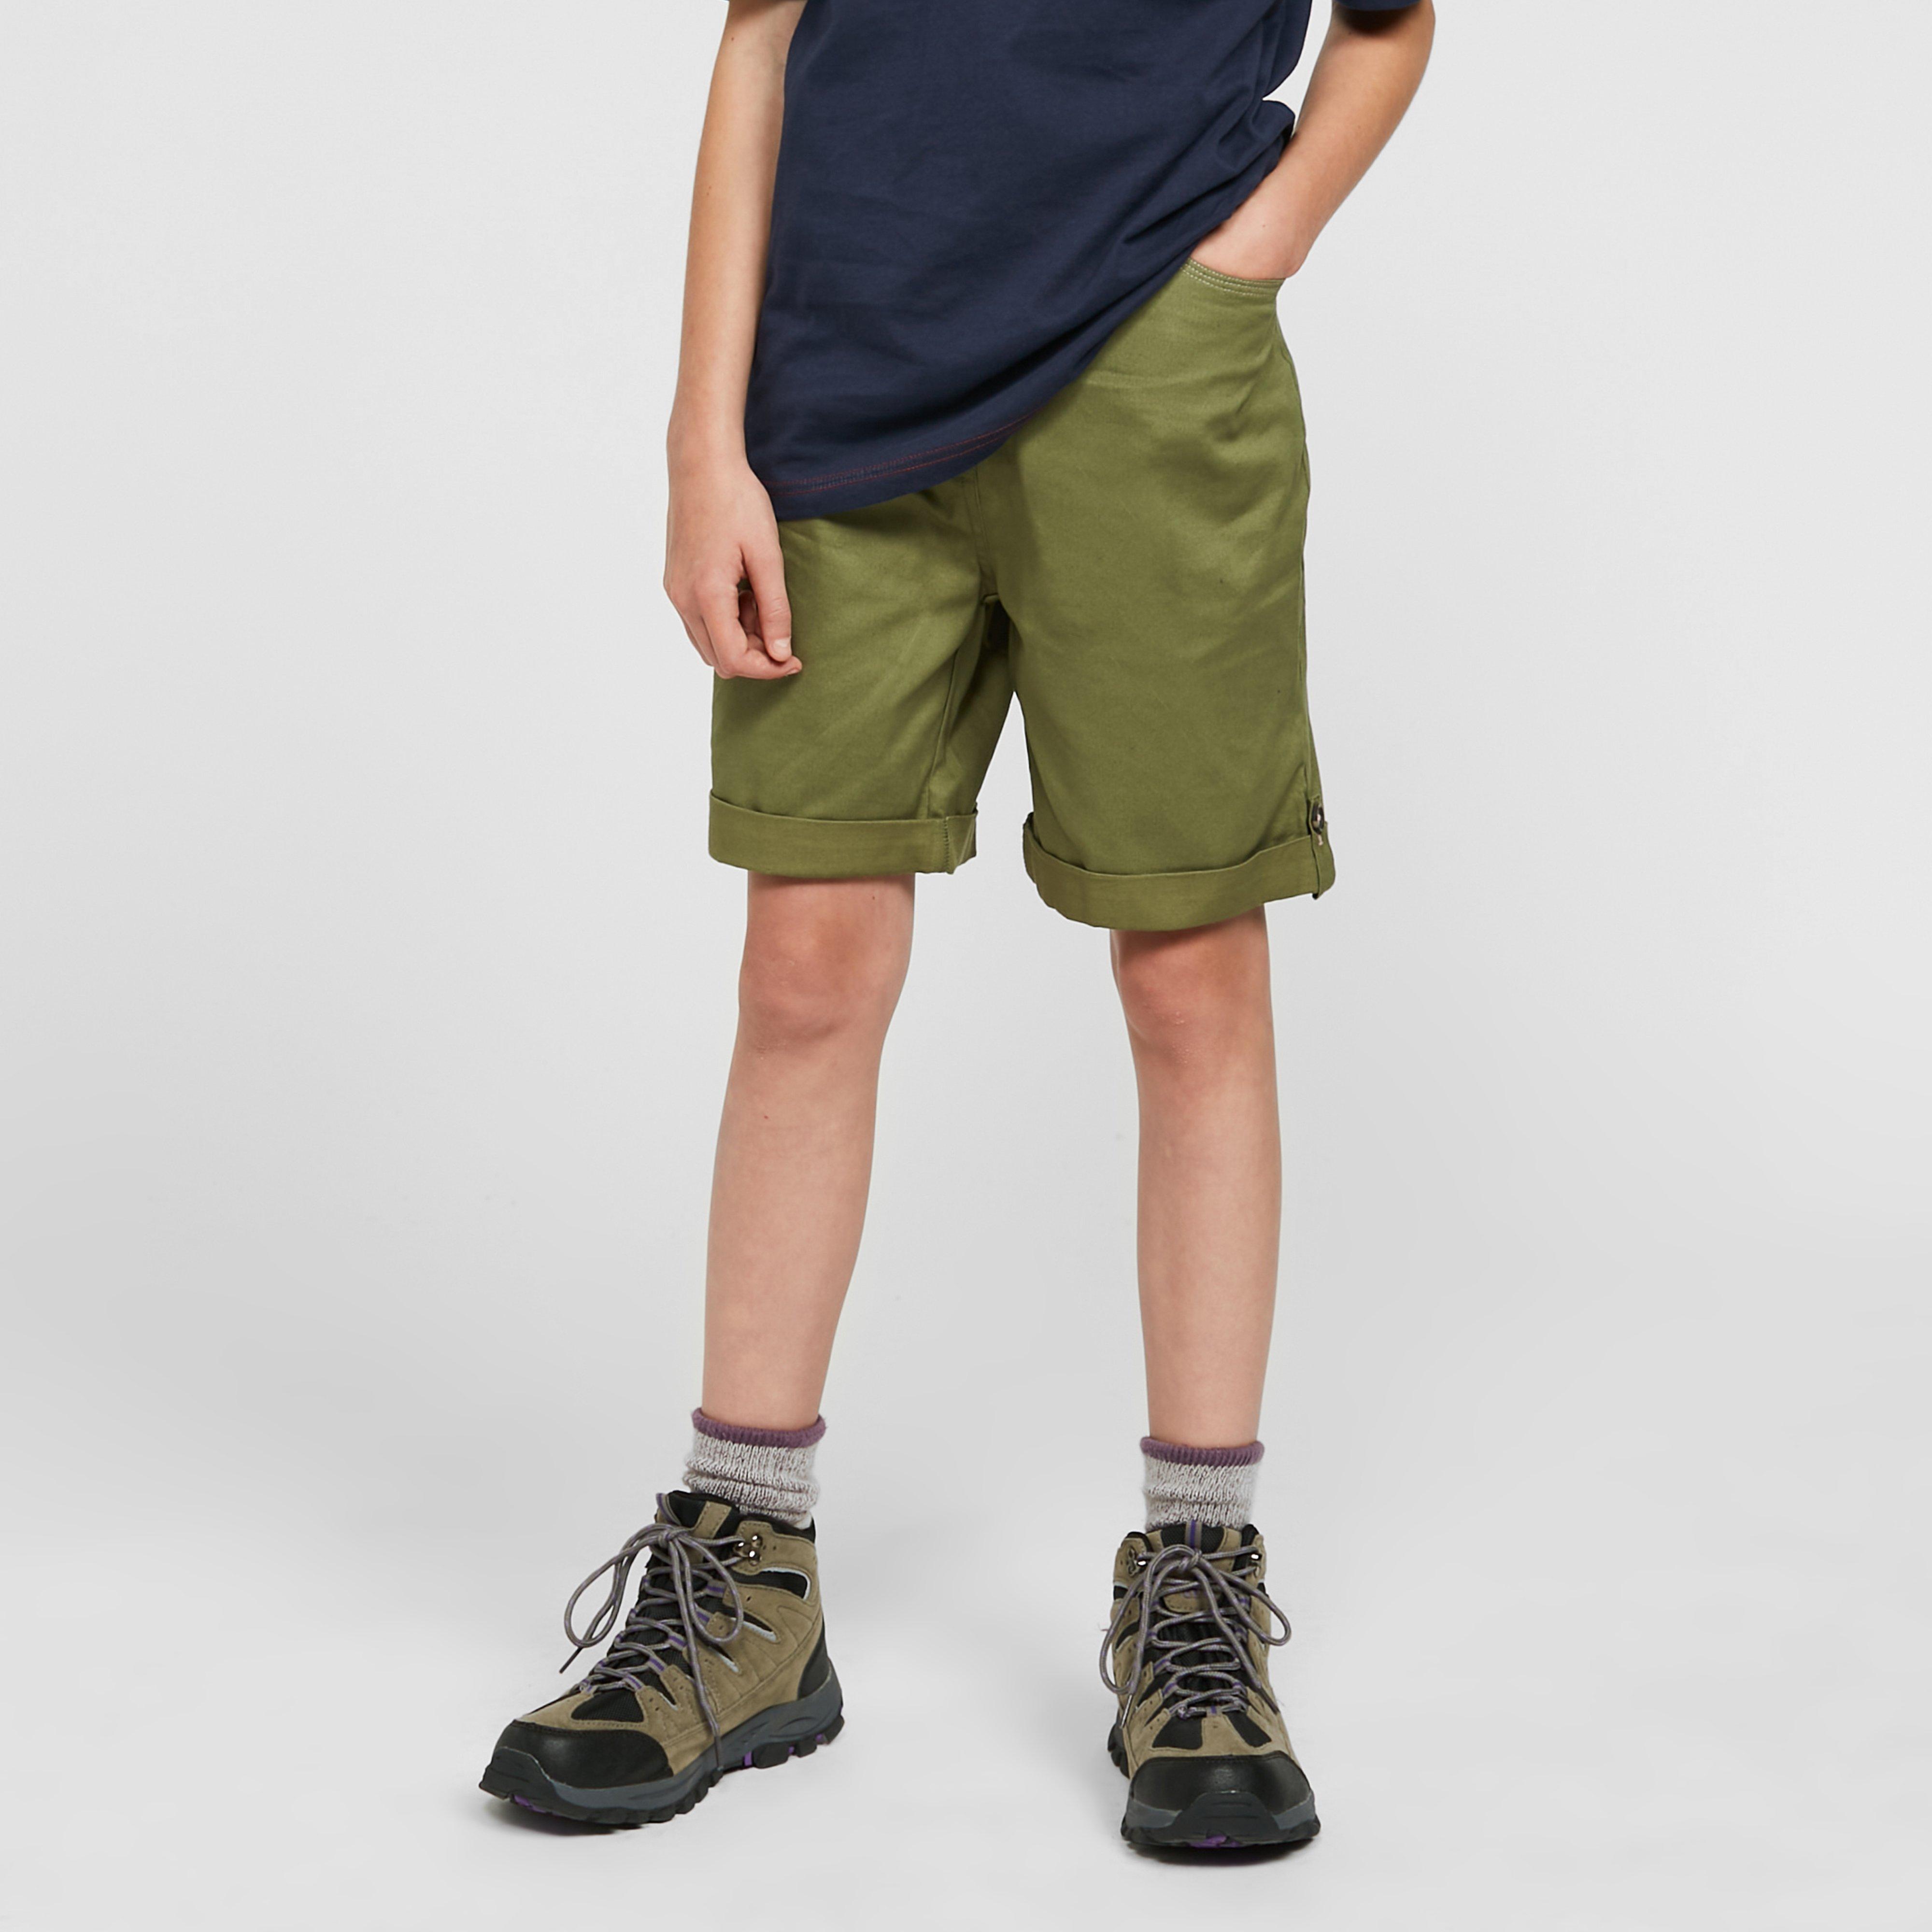 HI-GEAR Kids' Pembrook Shorts (ages 13-16), Green